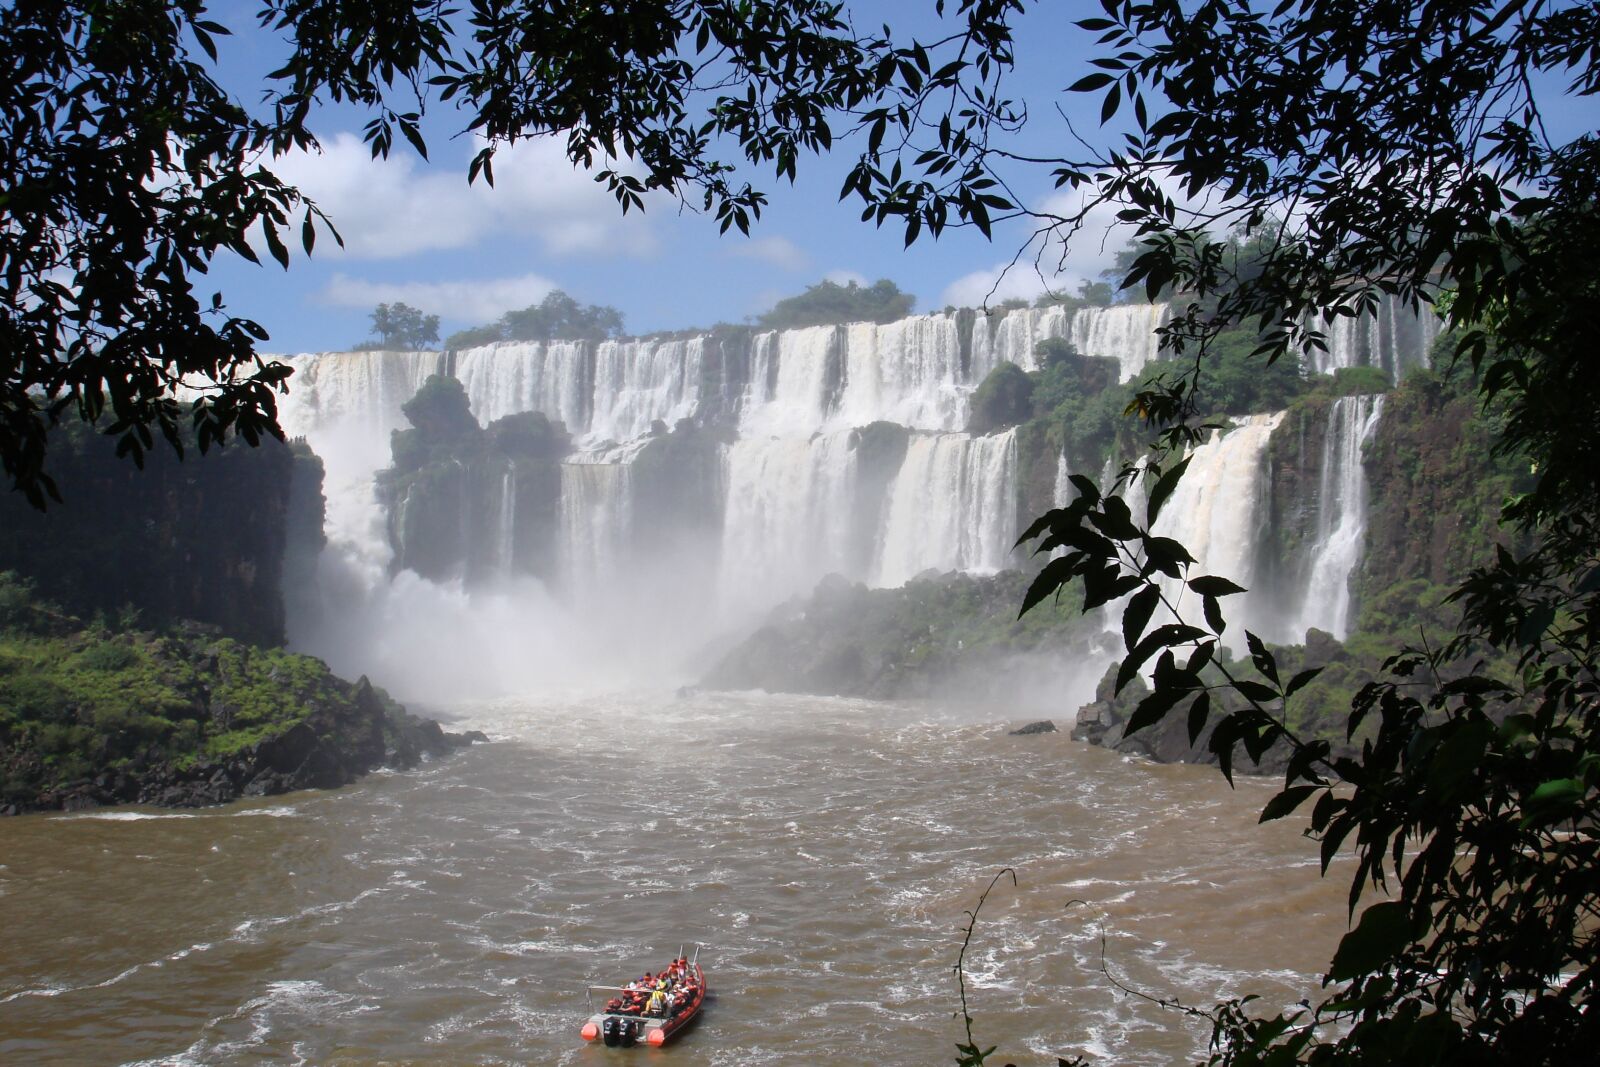 Sony DSC-W100 sample photo. Iguassu, brazil, waterfall photography